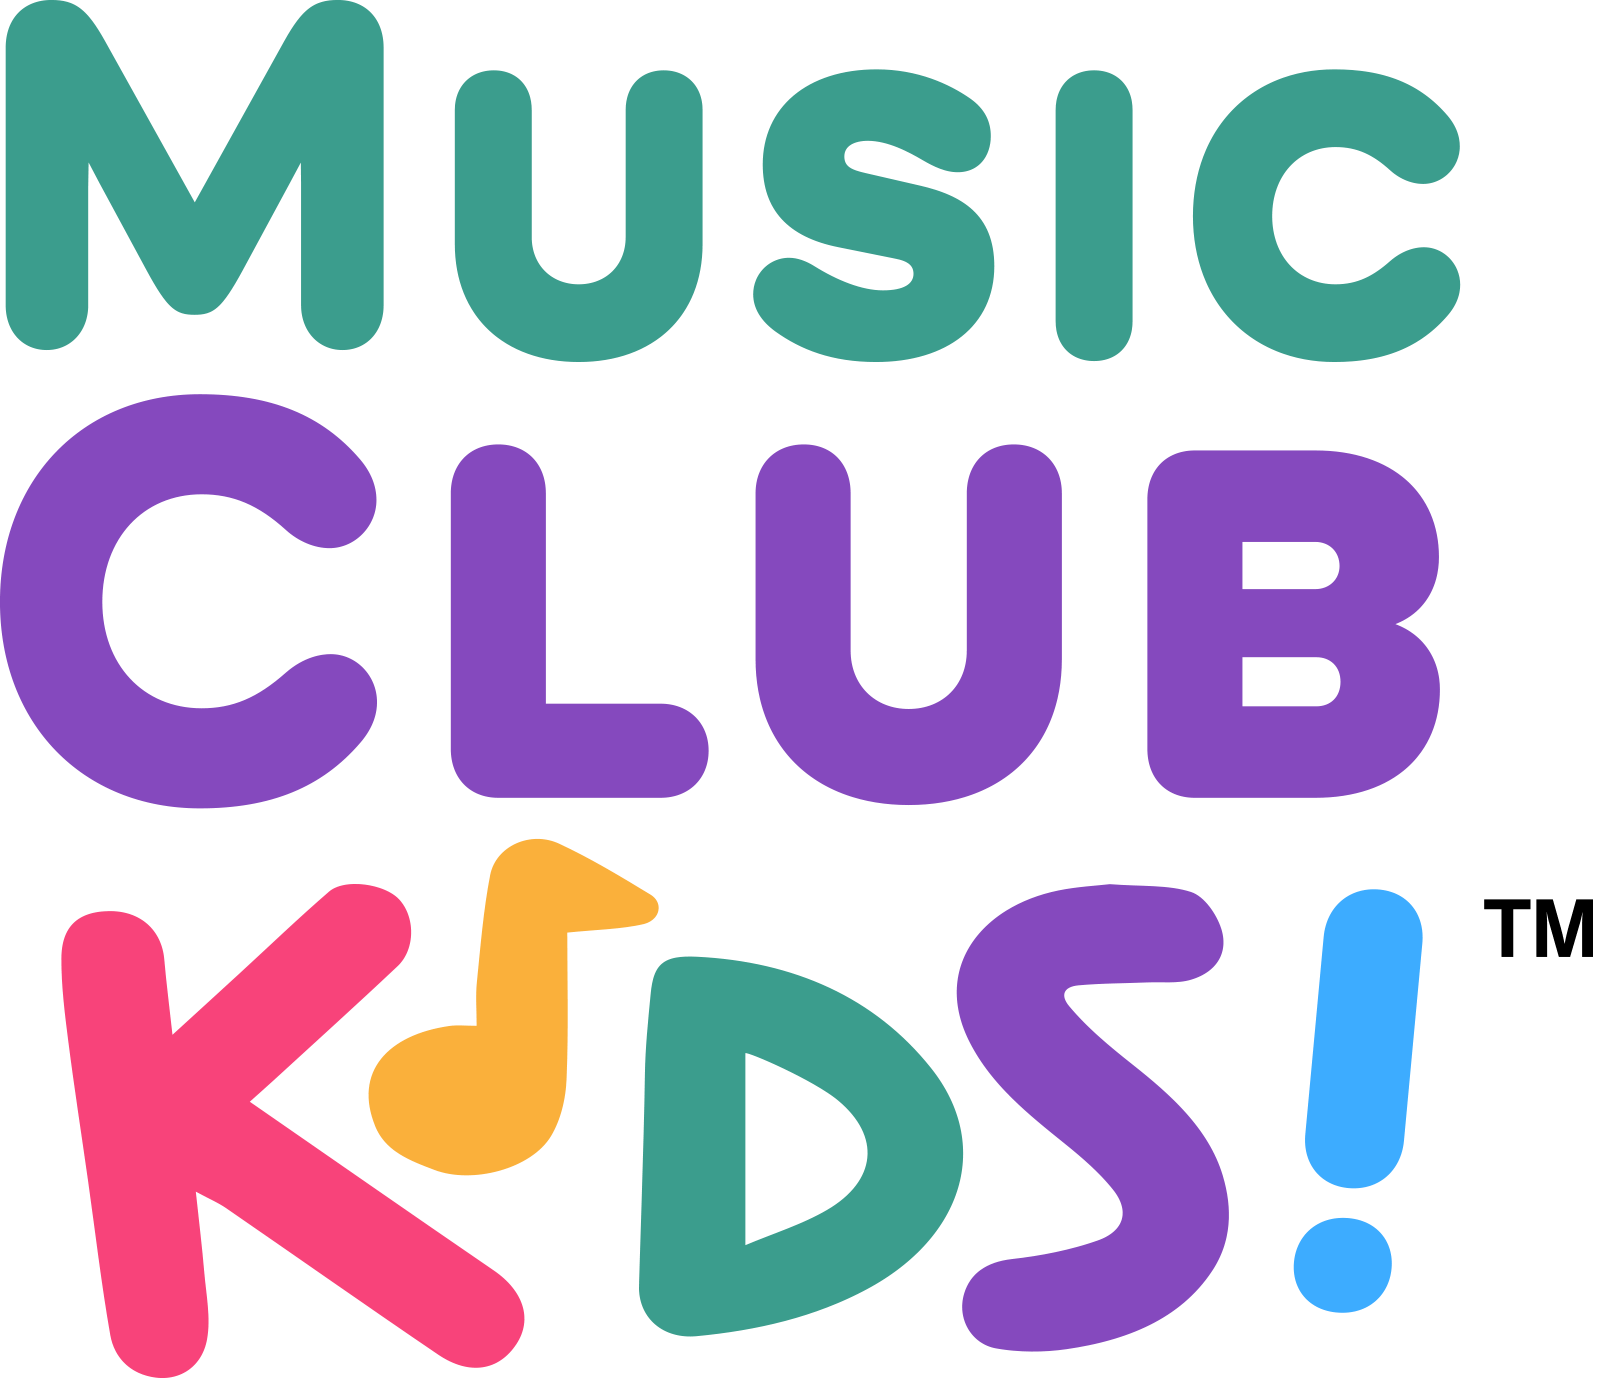 Music Club Kids logo